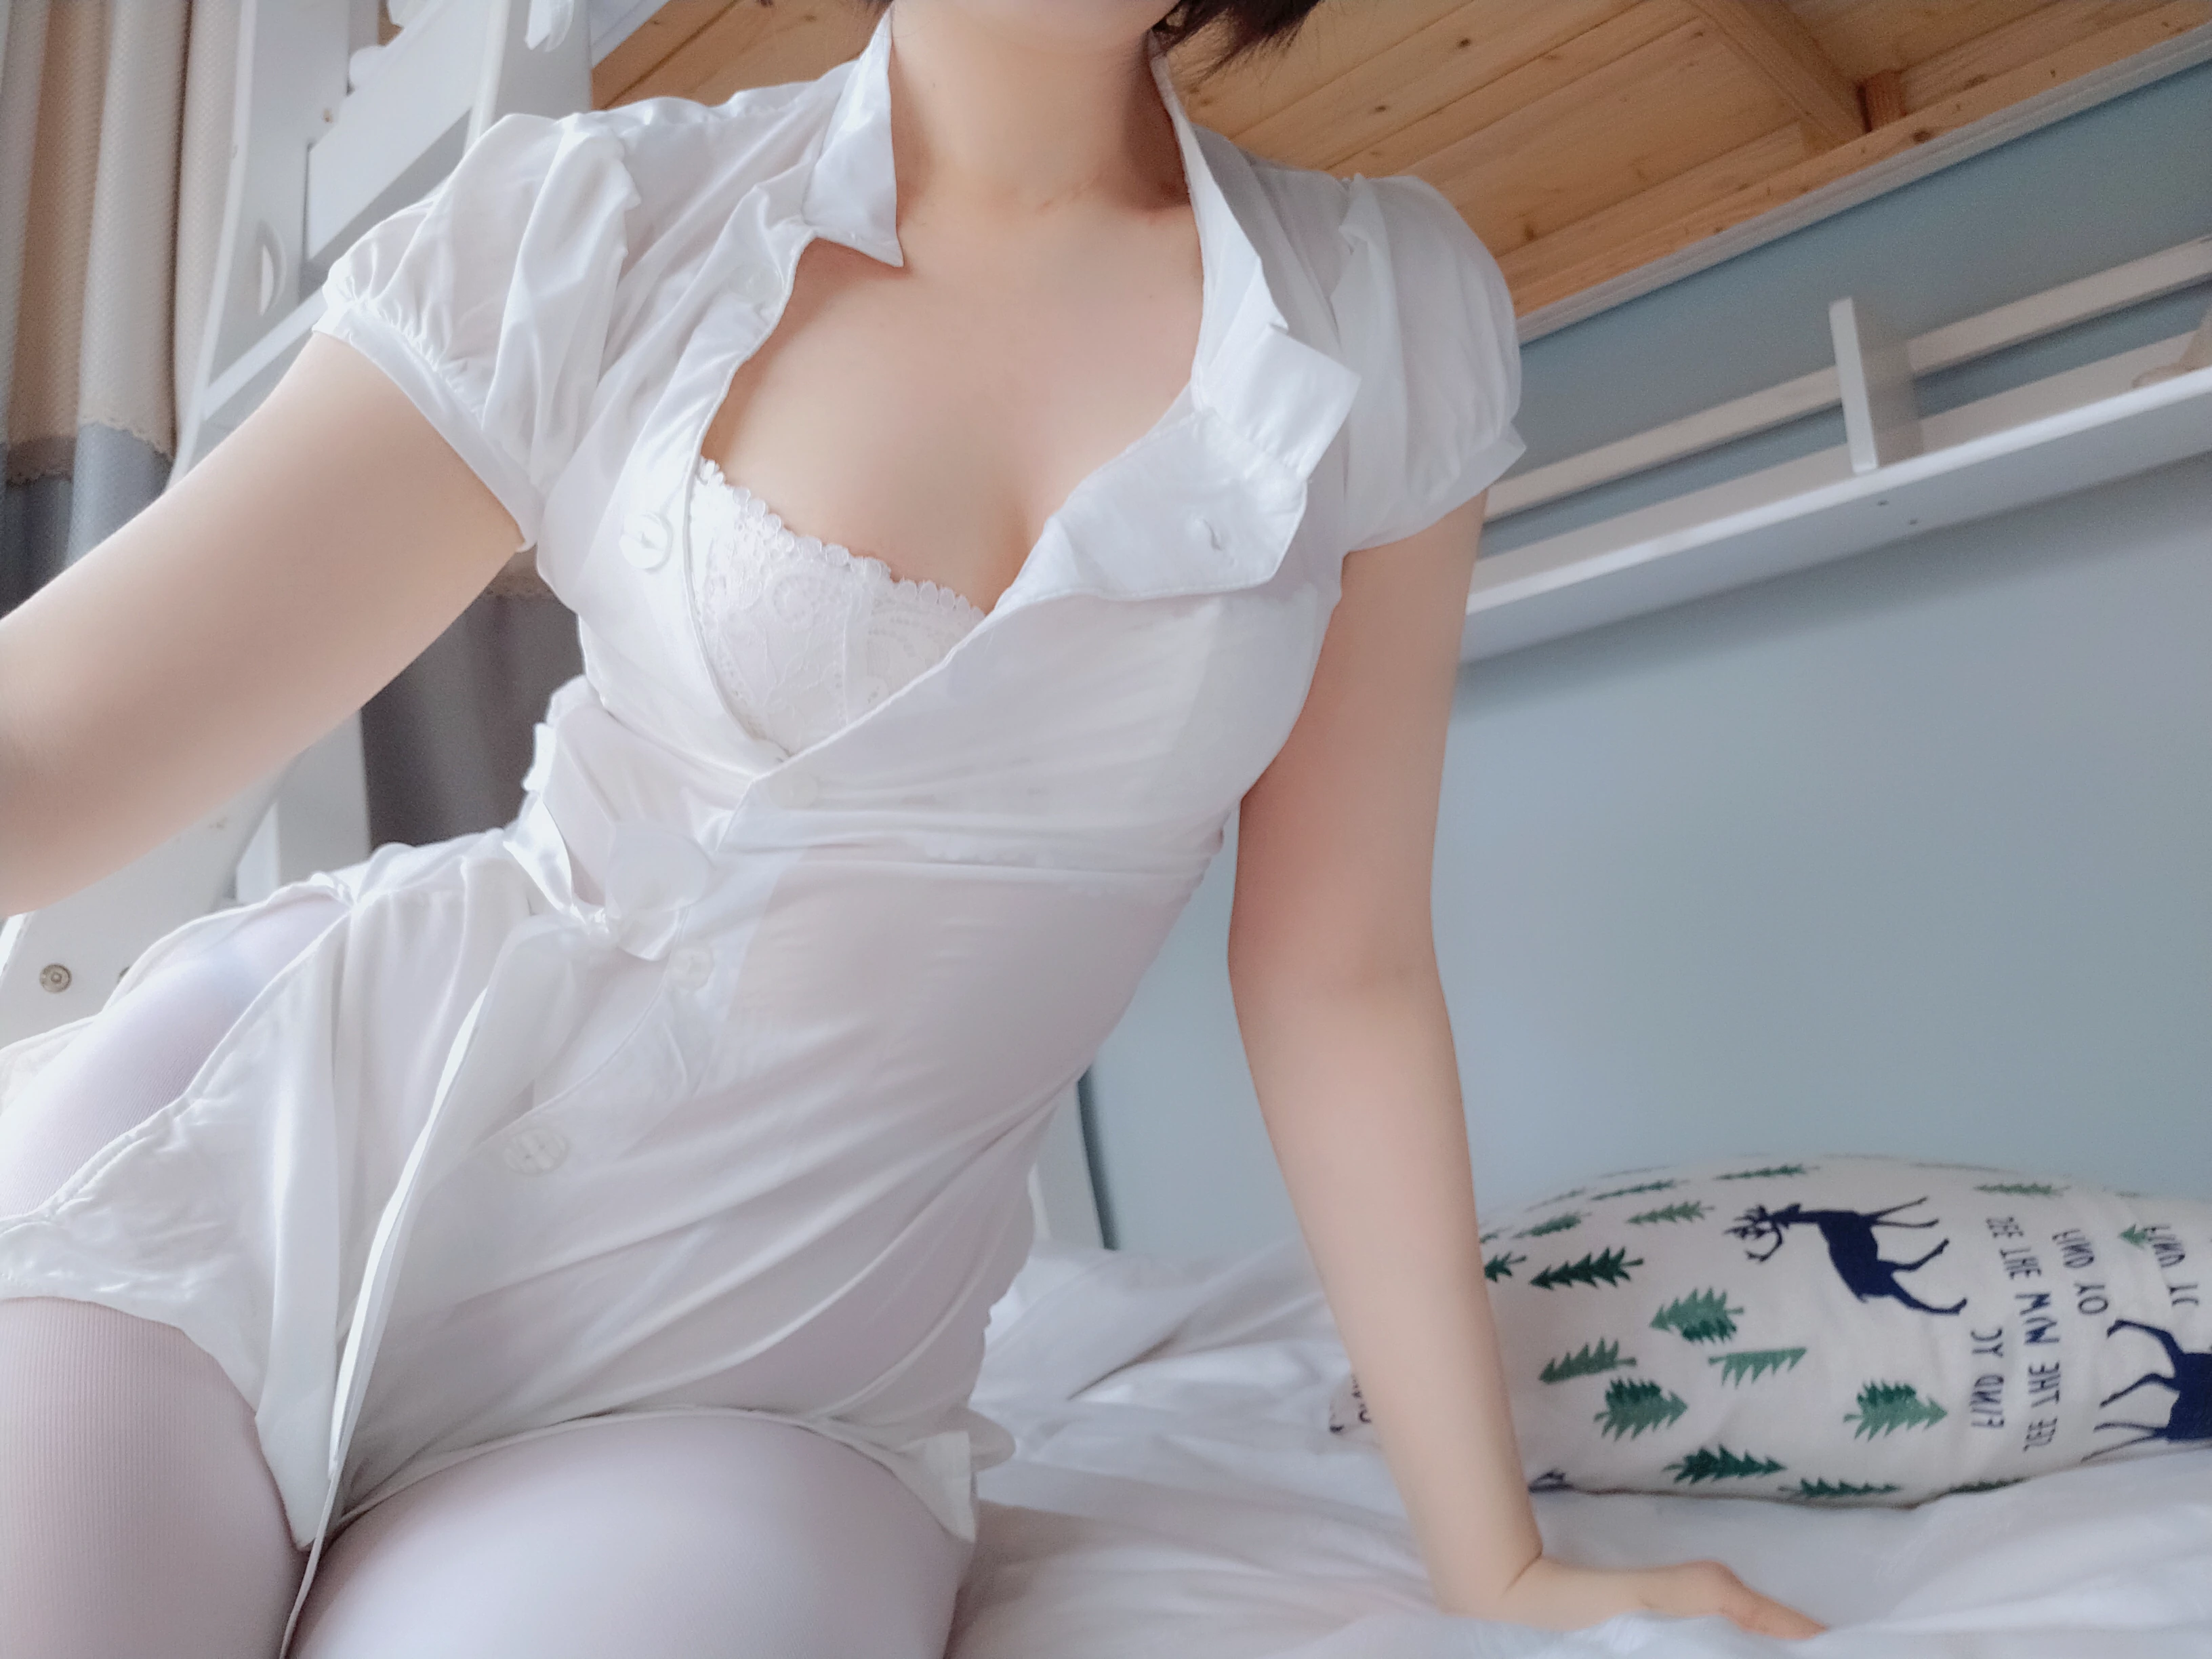 性感女护士 白银81 白色紧身情趣制服与白色蕾丝内衣加白色丝袜美腿私房写真集,